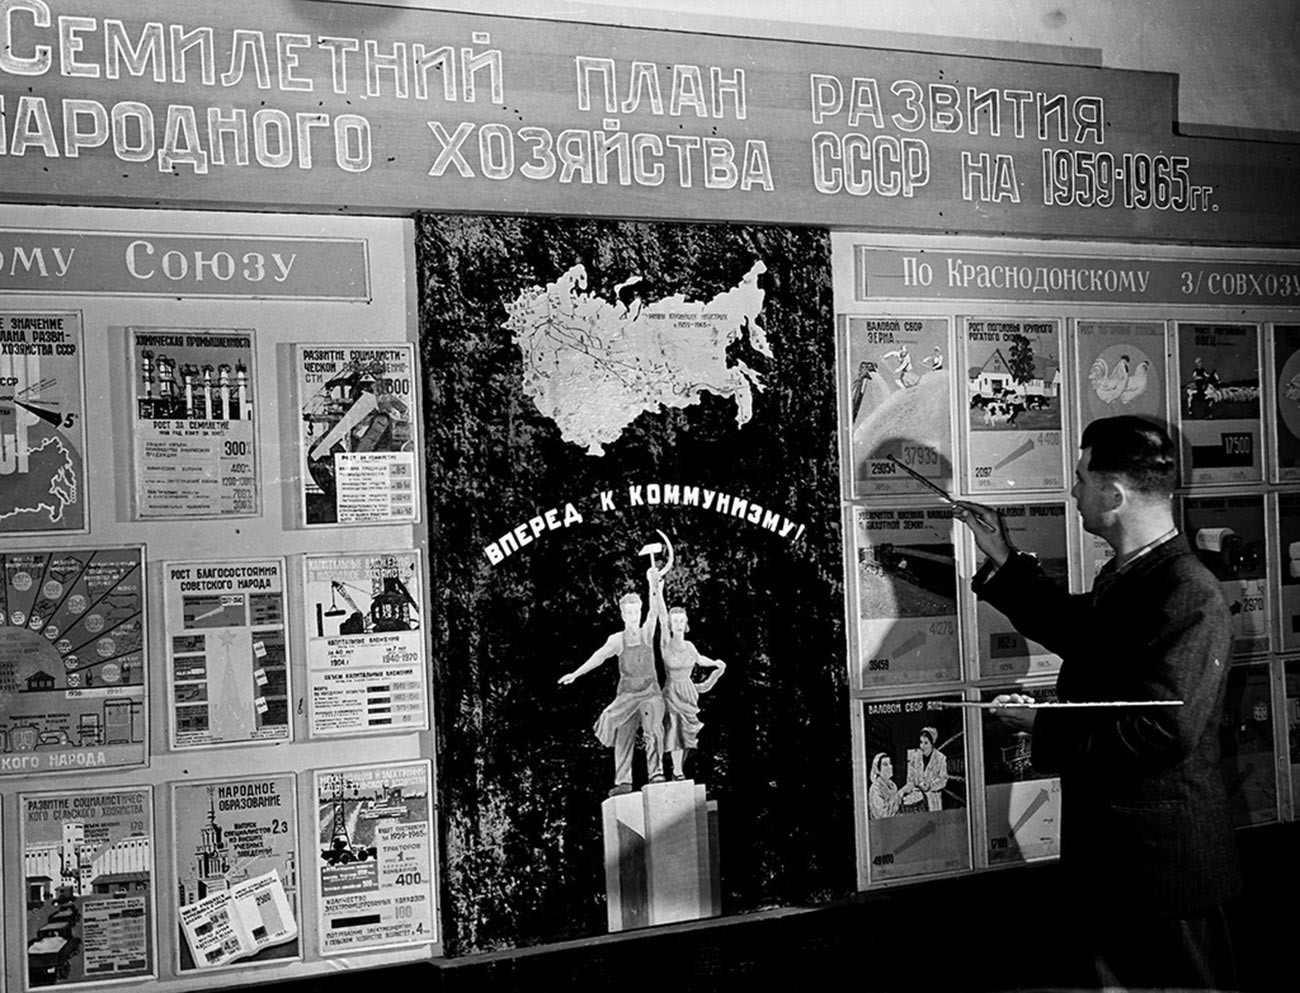 Fiodor Frolov, assistant de conducteur de moissonneuse-batteuse, devant le plan septennal de développement de l’agriculture, dans une salle de la Maison de la culture du sovkhoze Krasnodonski. Kazakhstan, 1959